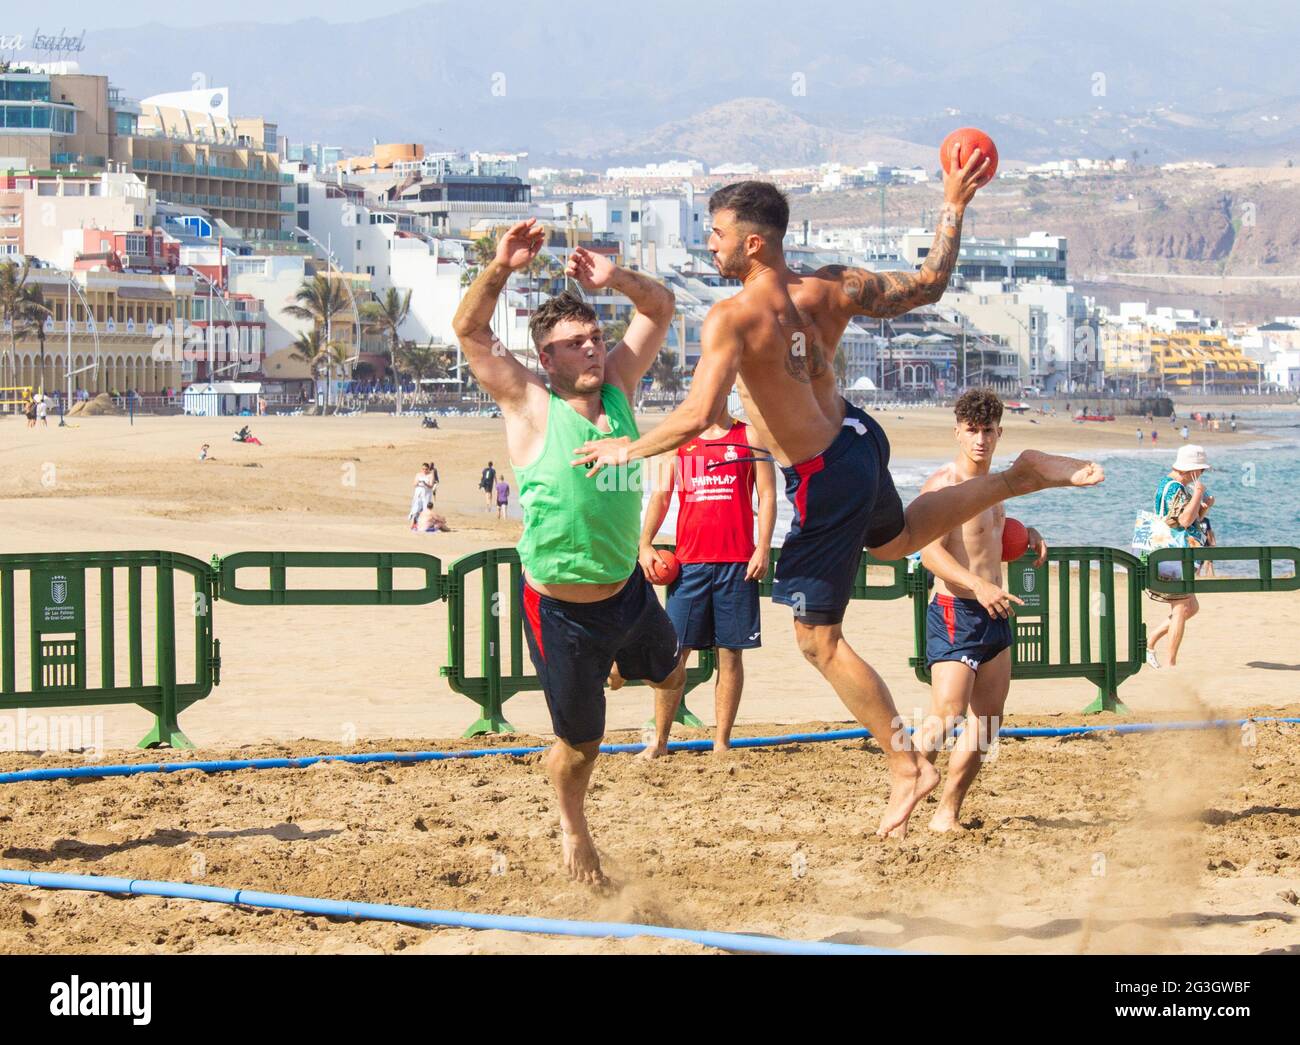 Las Palmas, Gran Canaria, Kanarische Inseln, Spanien. Juni 2021. Teams trainieren vor einem internationalen Handball-Turnier am Strand von Las Palmas auf Gran Canaria (18.-20. Juni). Quelle: Alan Dawson/Alamy Live News Stockfoto